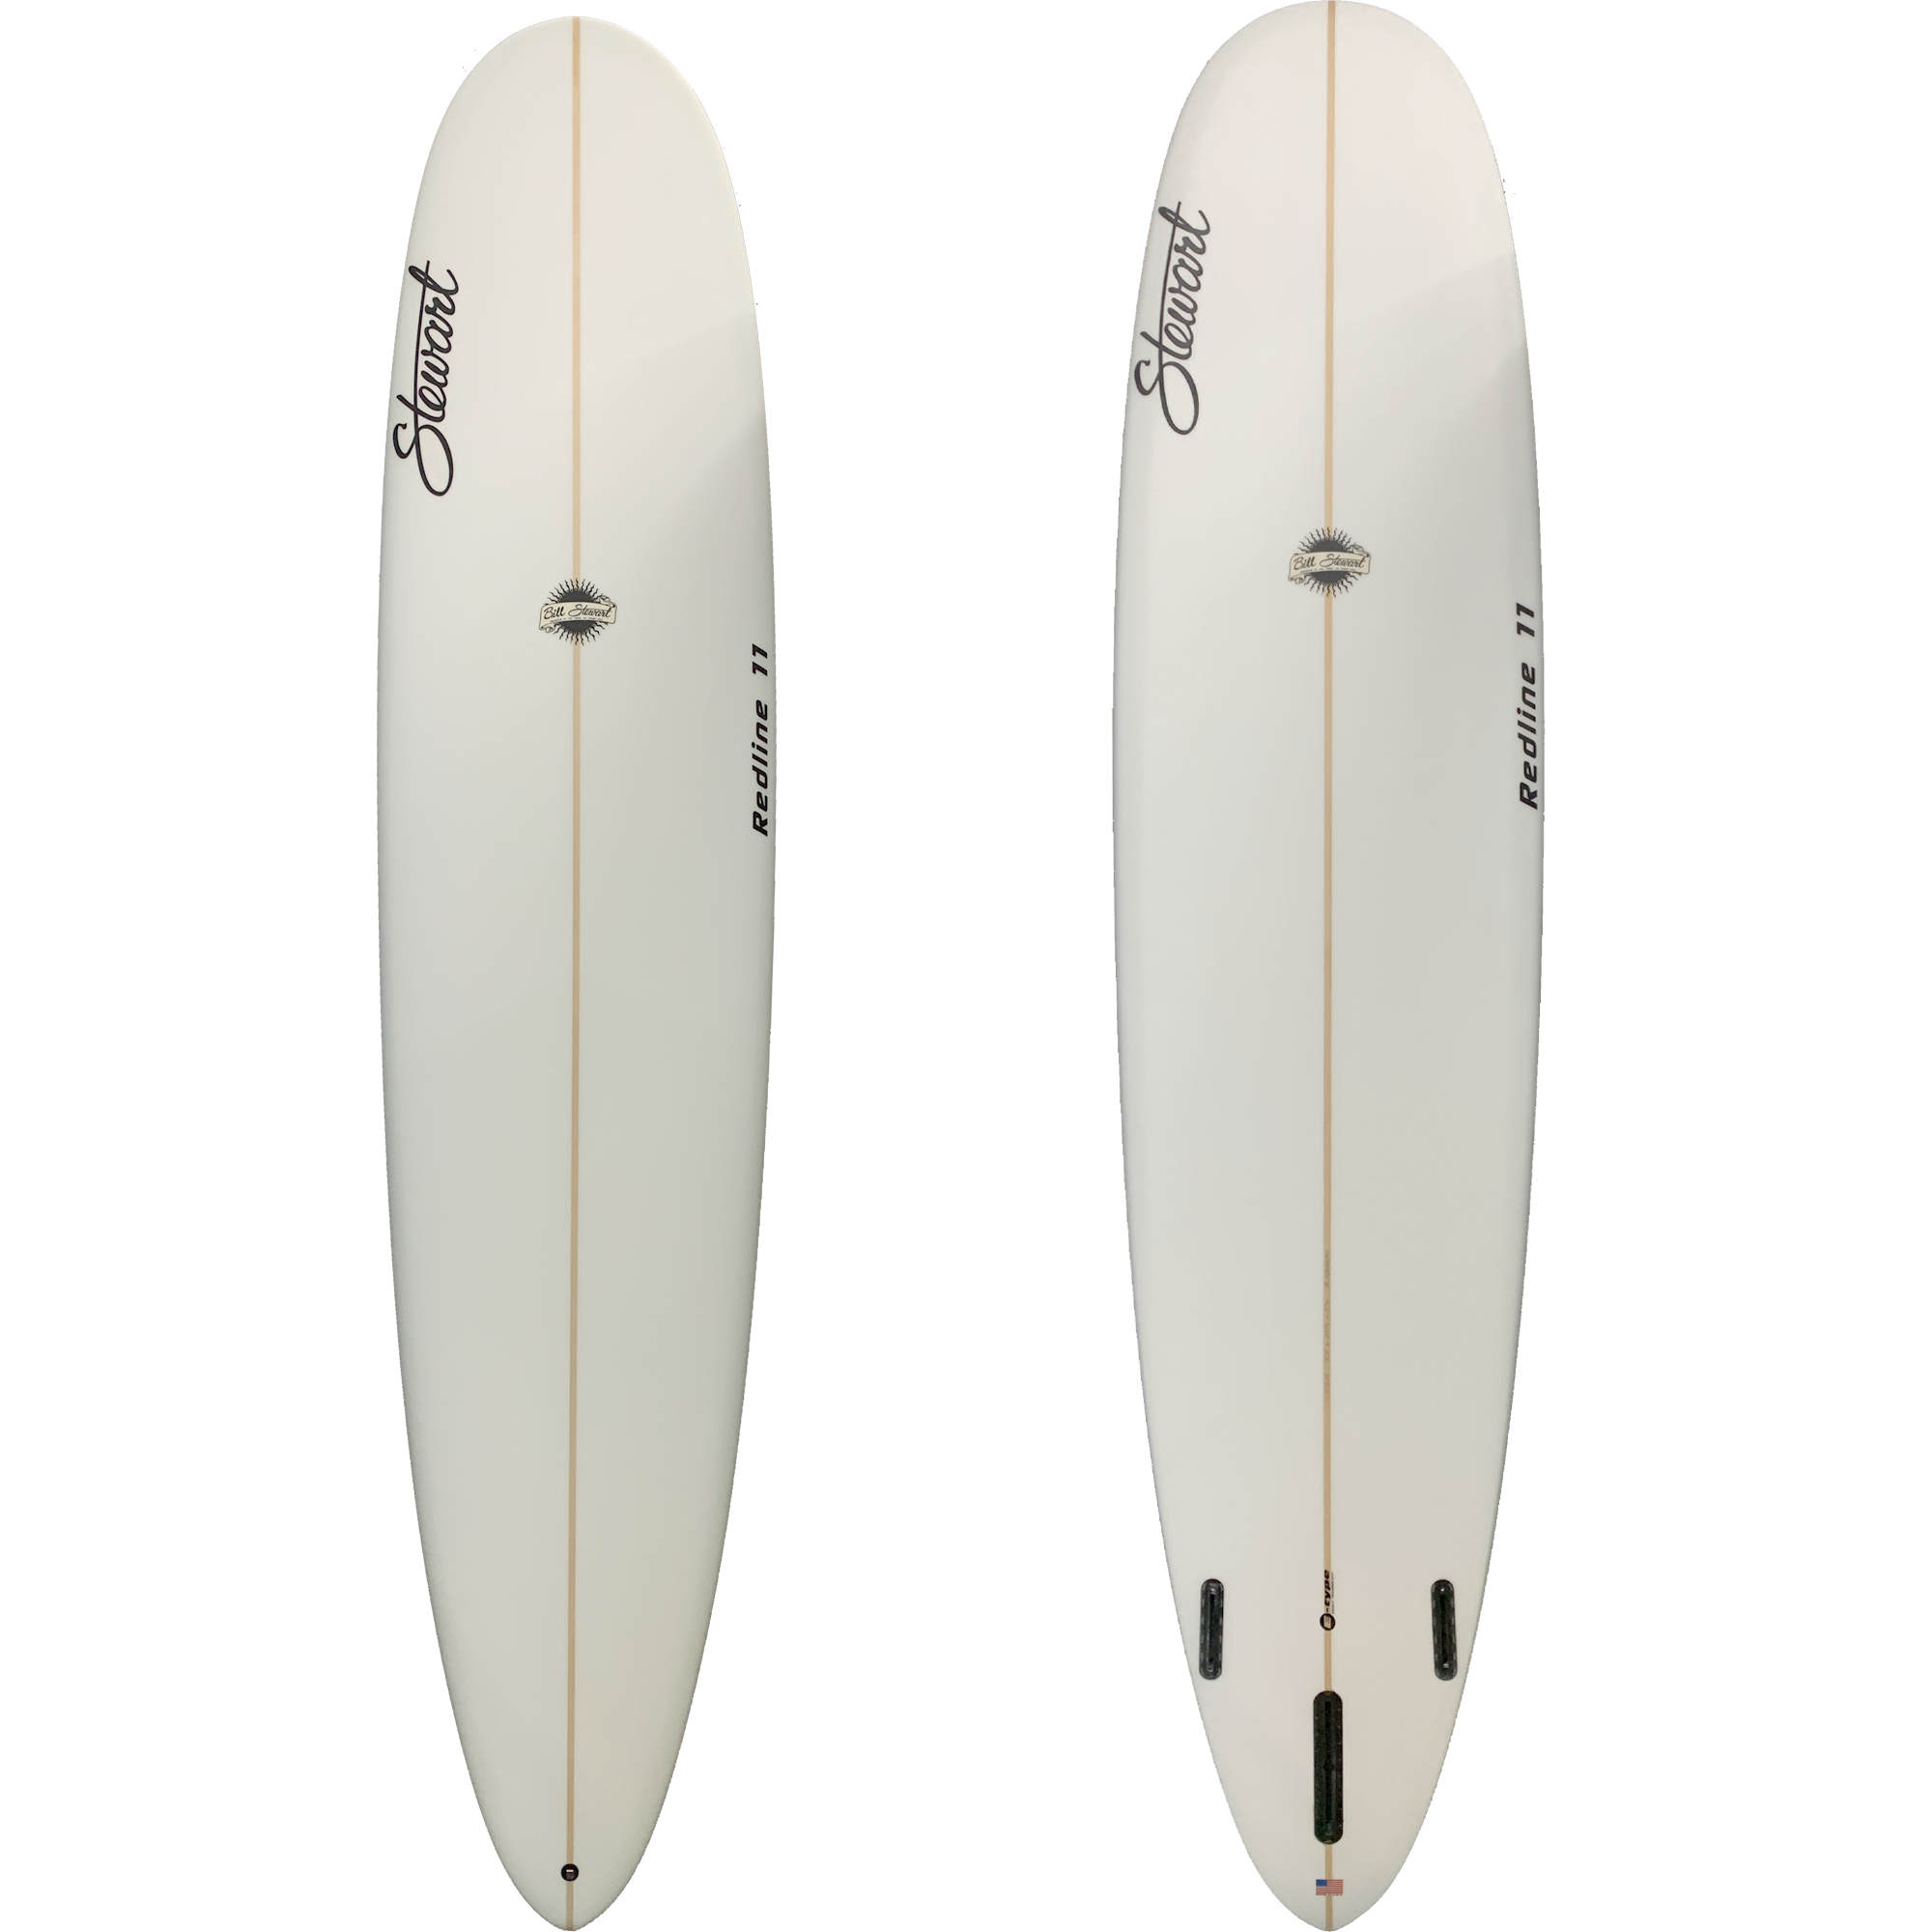 Stewart Redline 11 EPS Longboard Surfboard